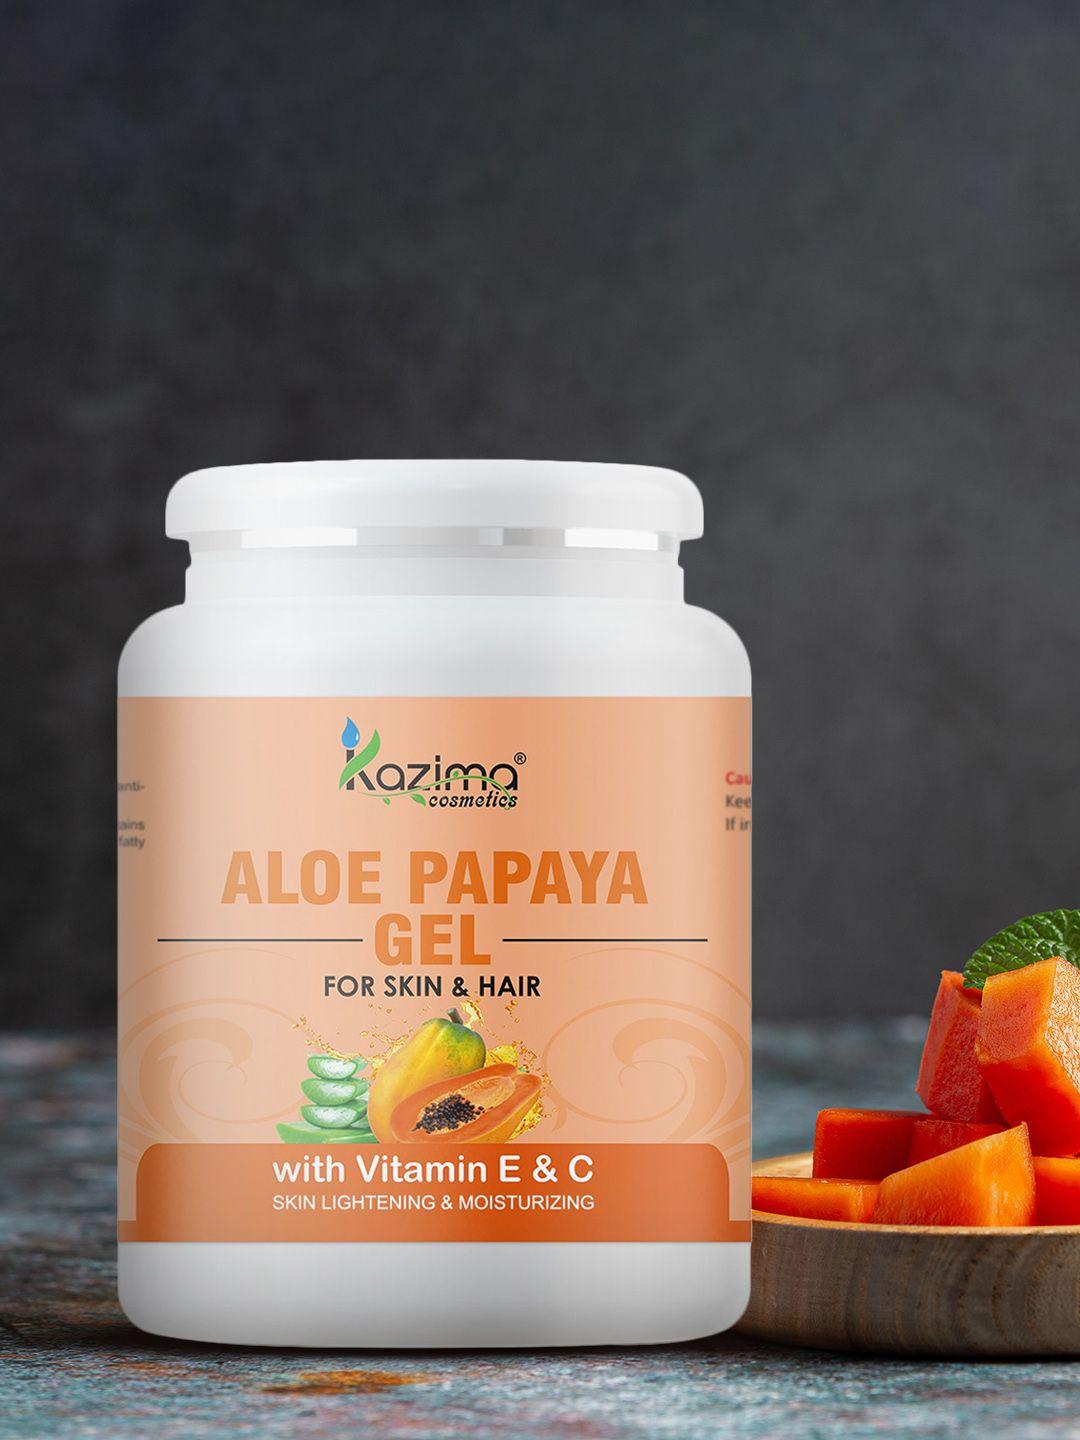 kazima aloe papaya gel for skin & hair - 500 g